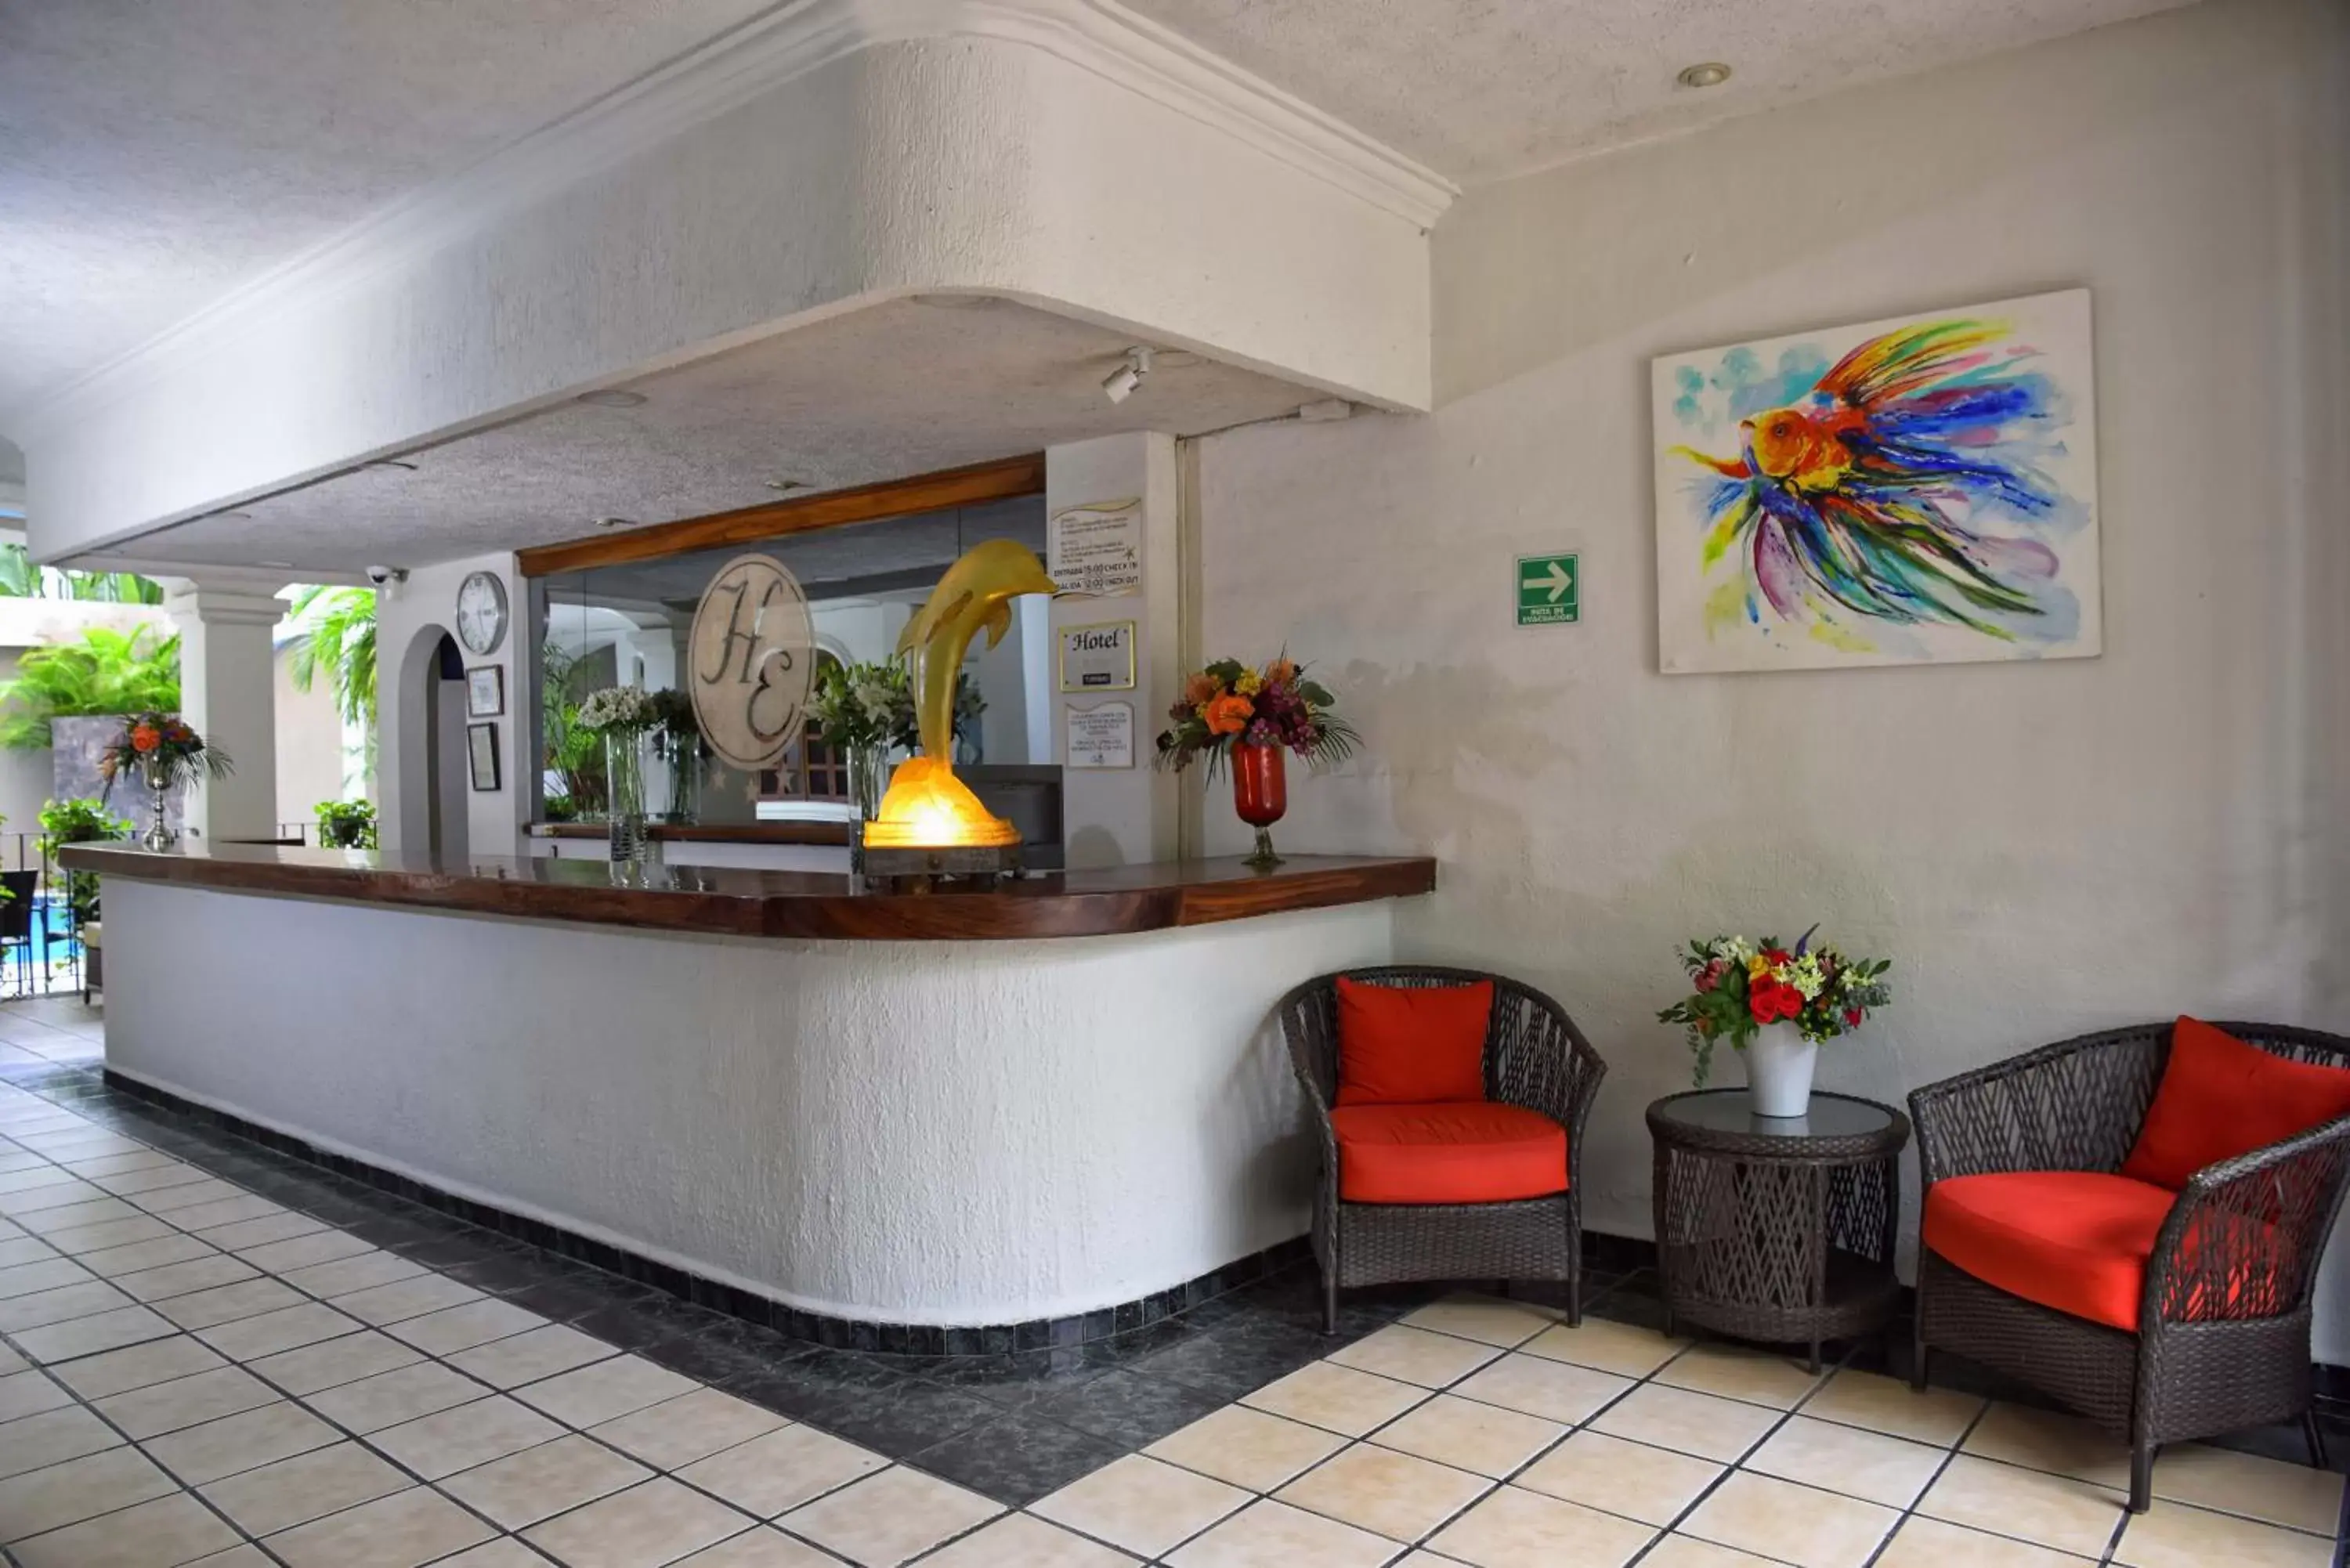 Lobby or reception, Lobby/Reception in Hotel Eloisa